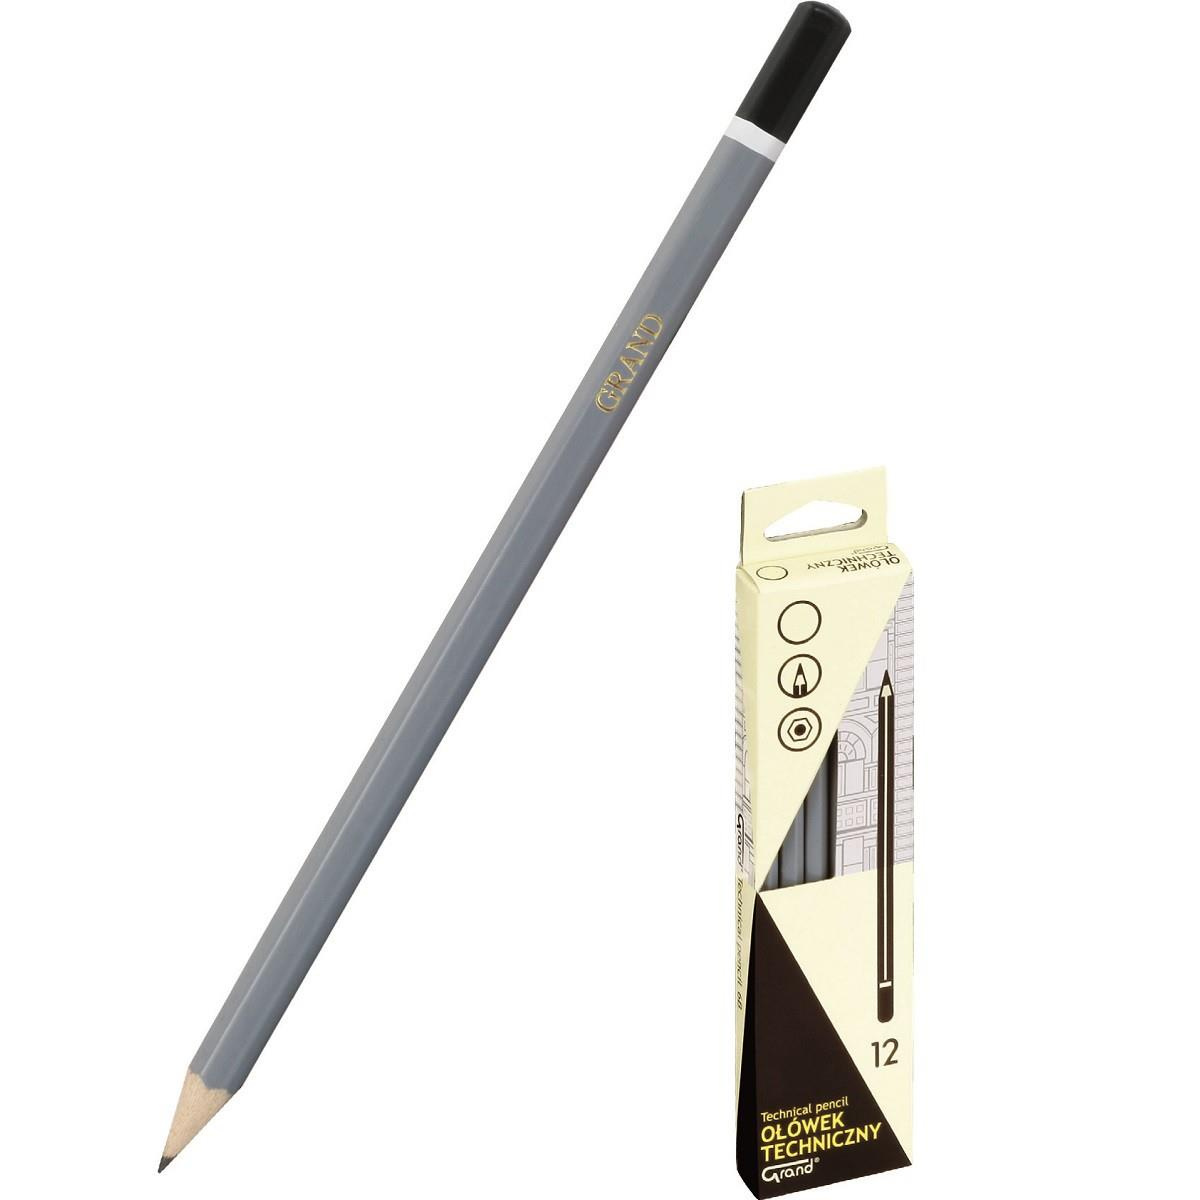 Ołówek techniczny Grand 3B